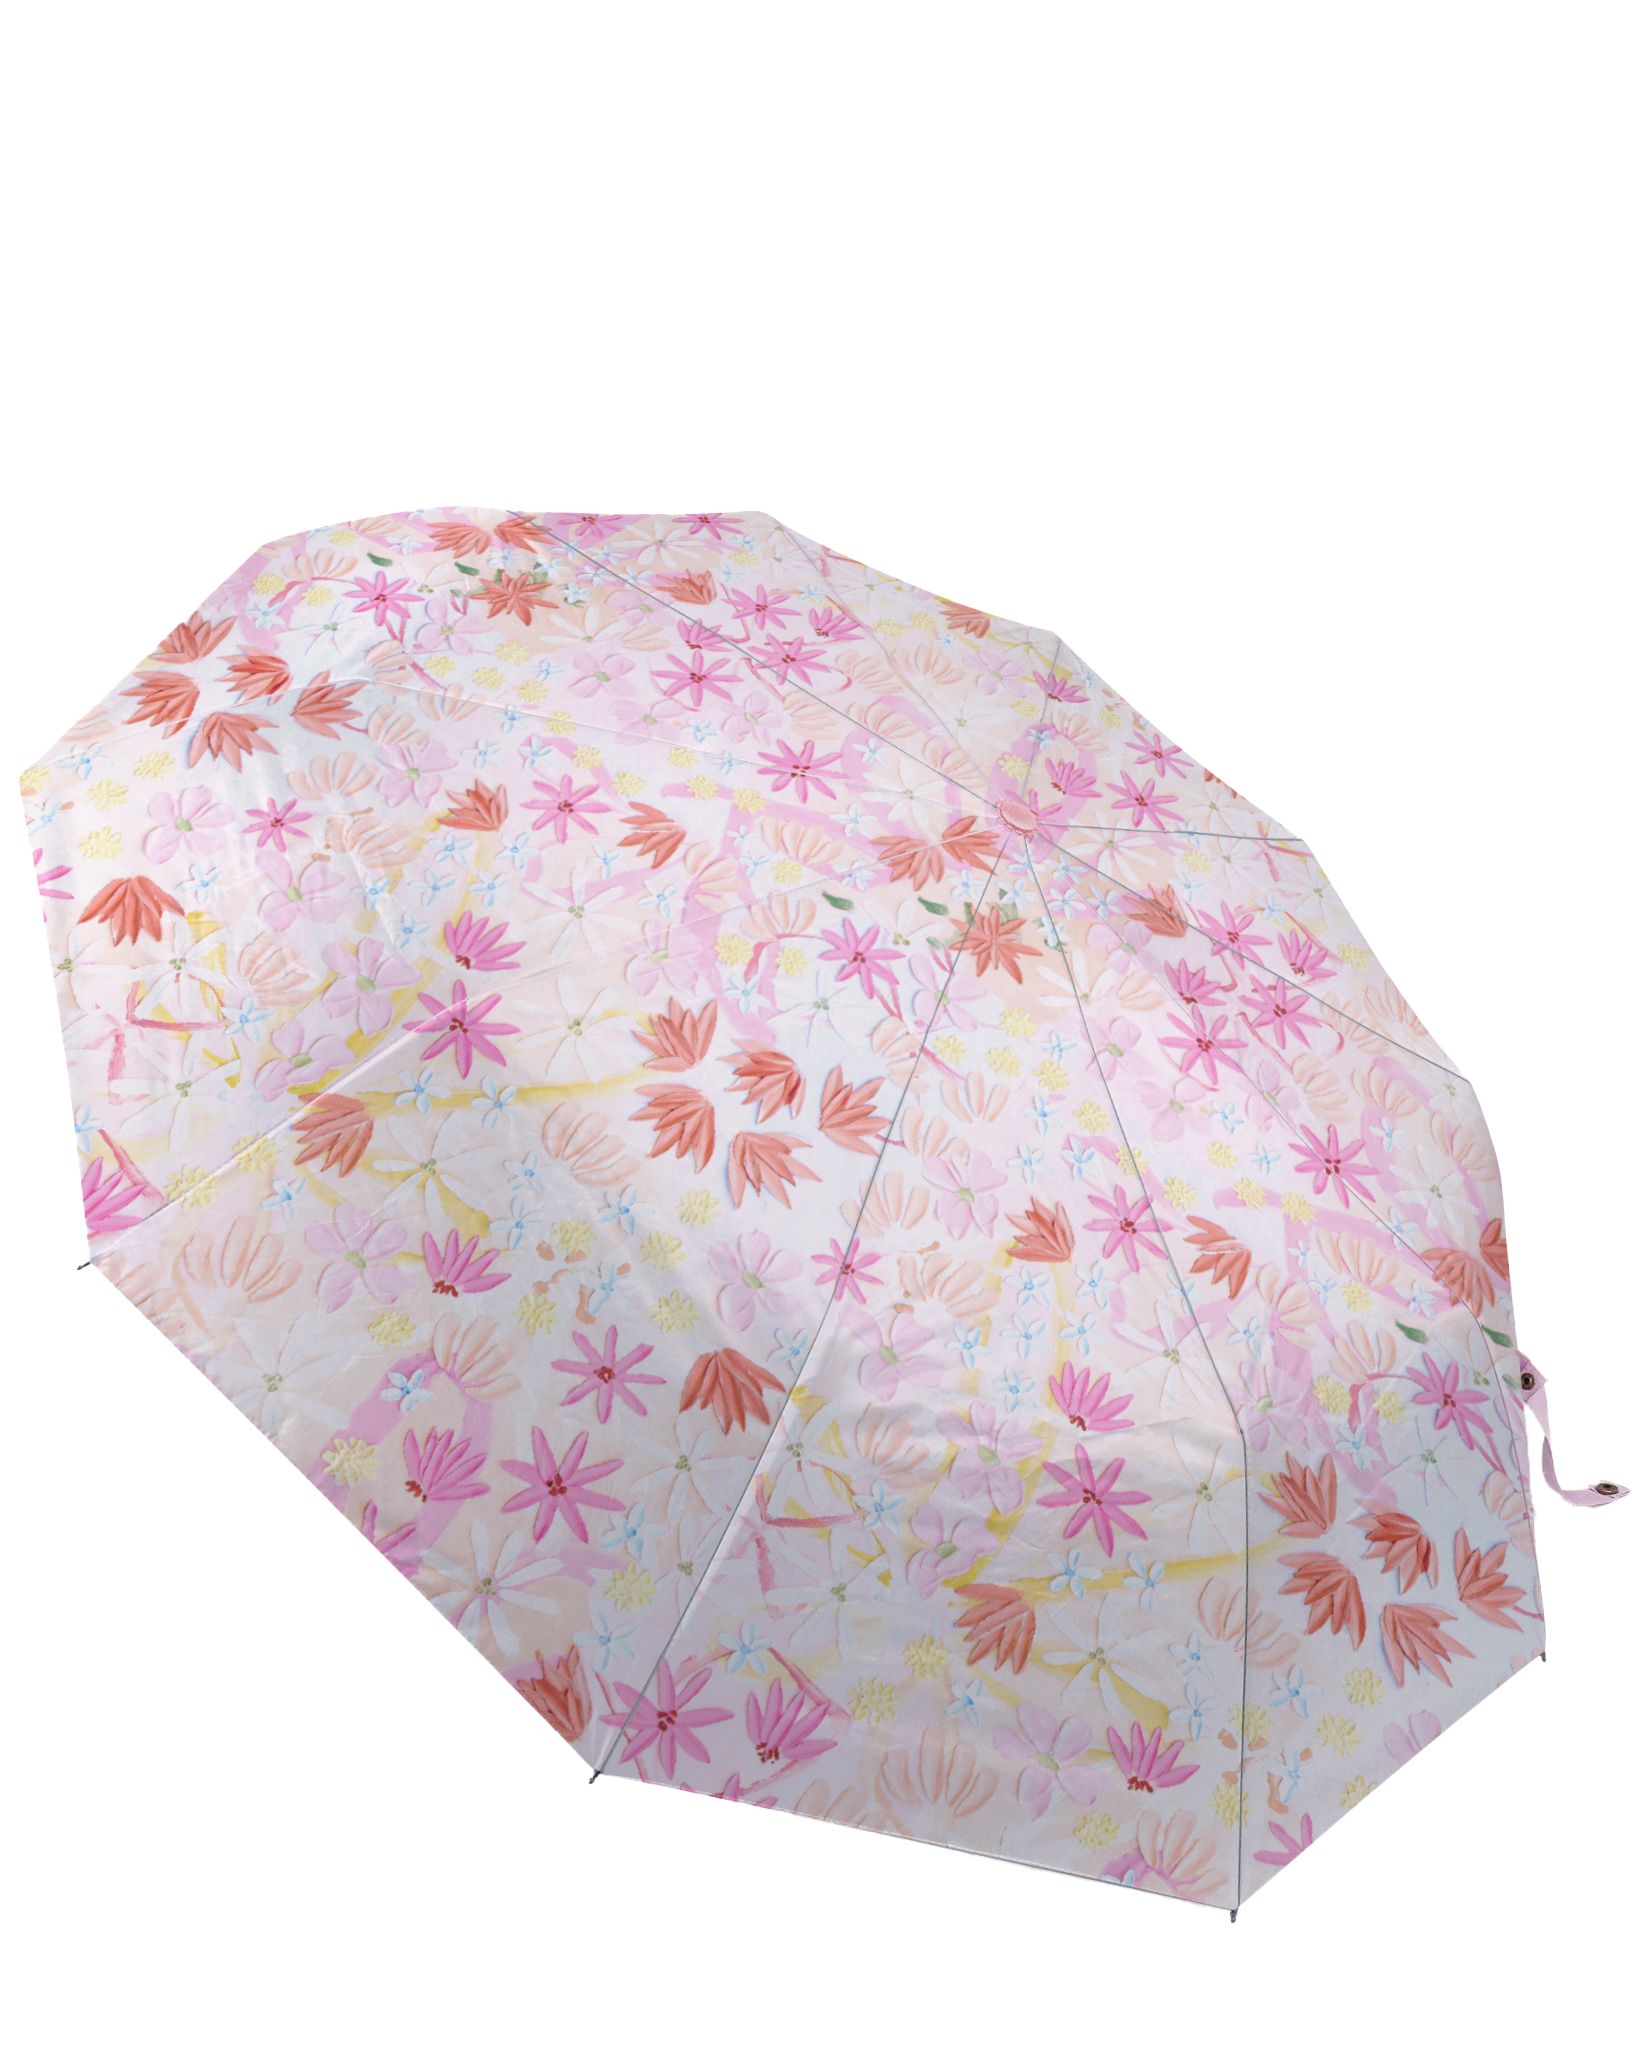 Daisy Chain Umbrella